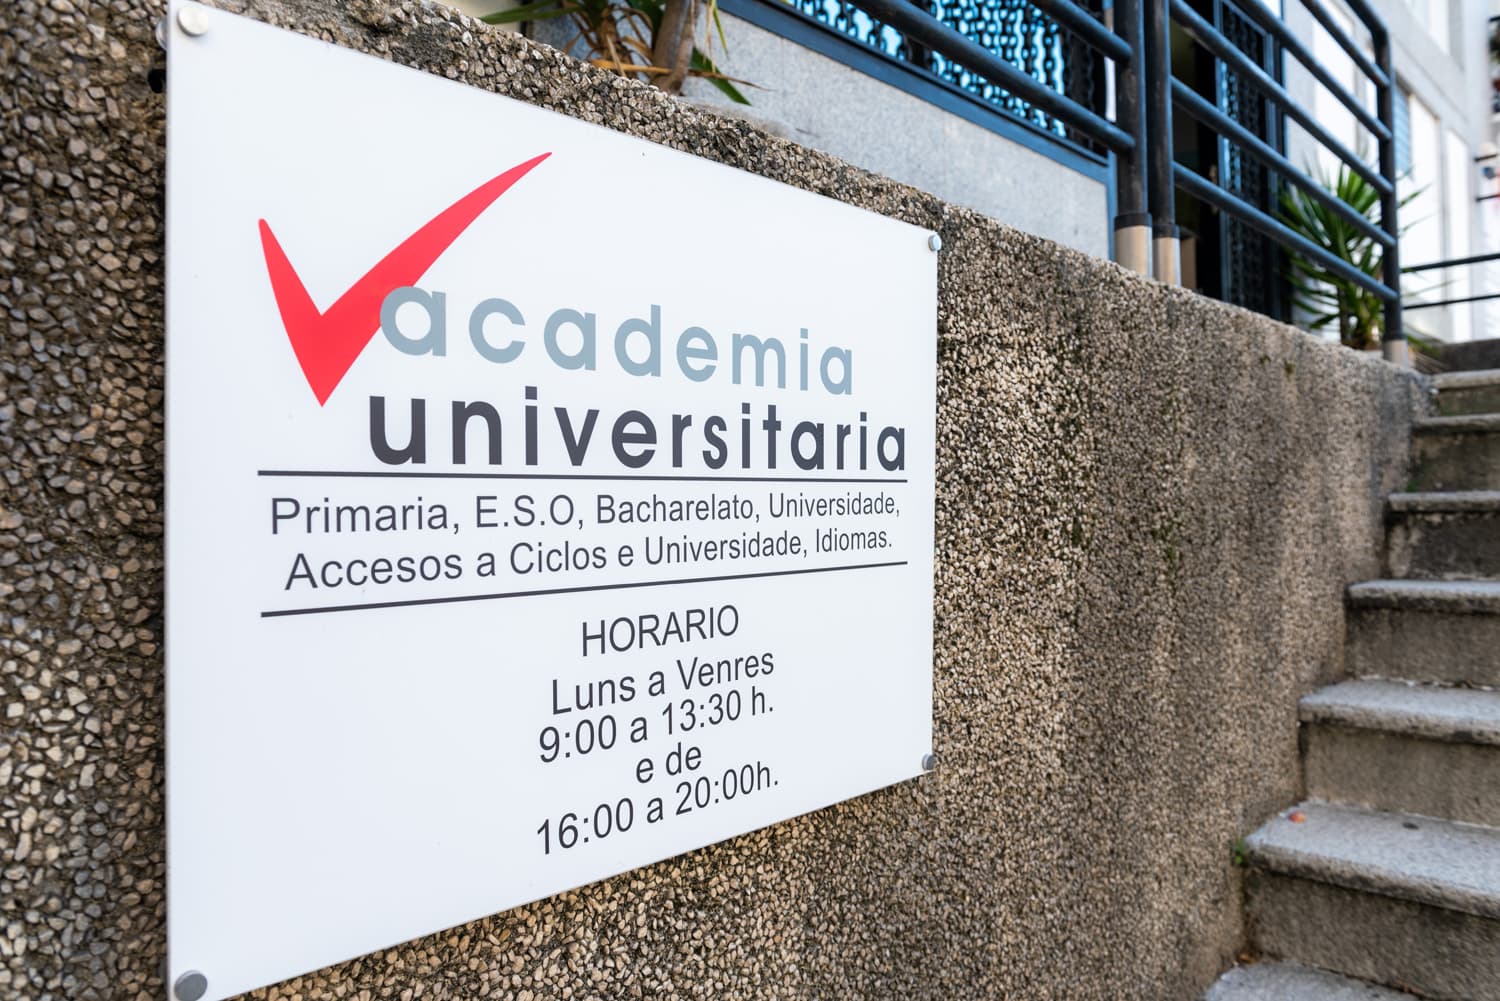 Academia universitaria en Vigo